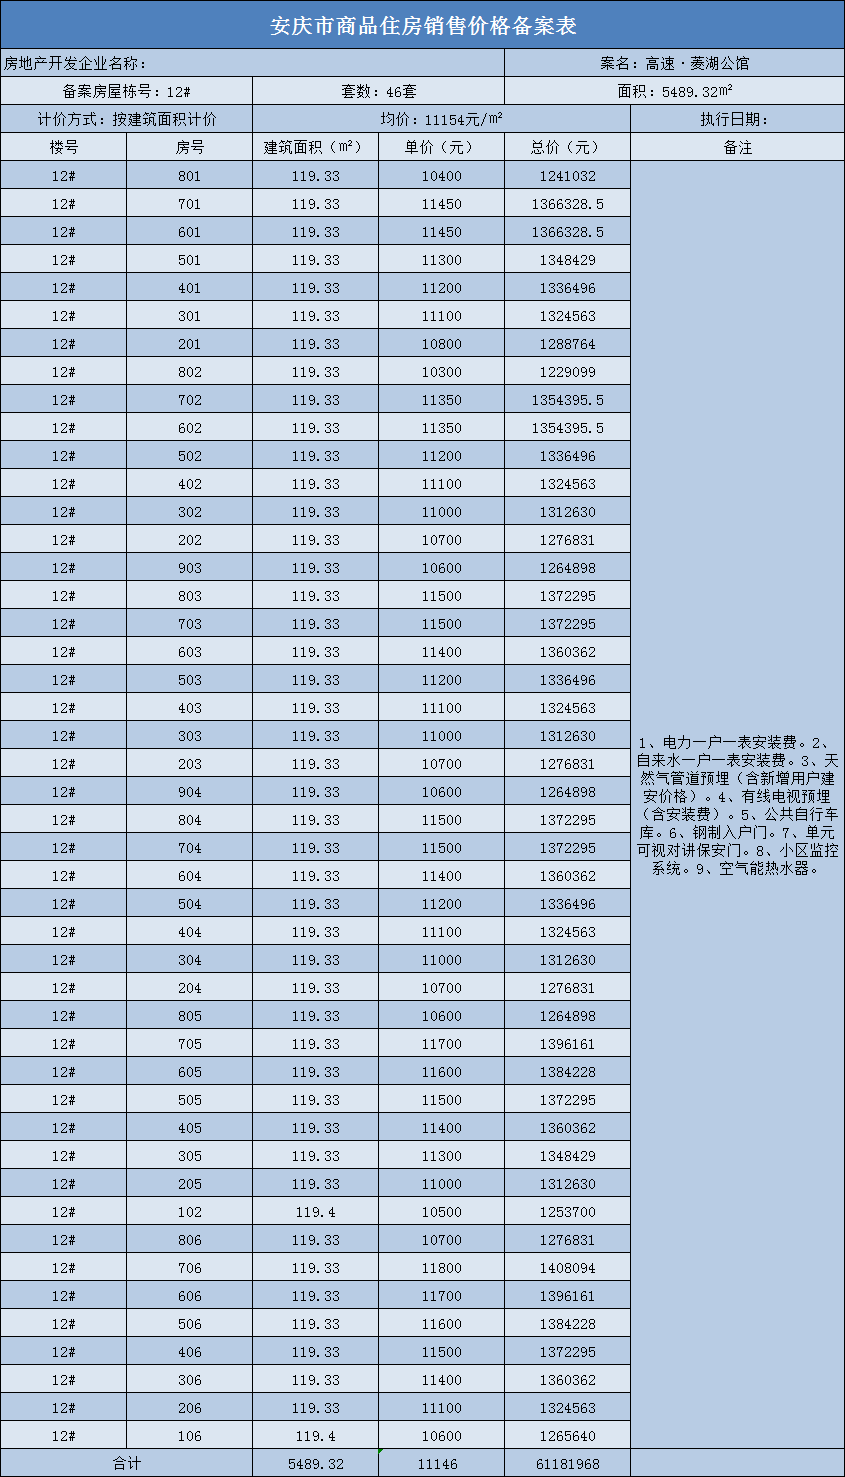 安庆高速·菱湖公馆共备案住宅108套，备案均价约为11389.5元/㎡